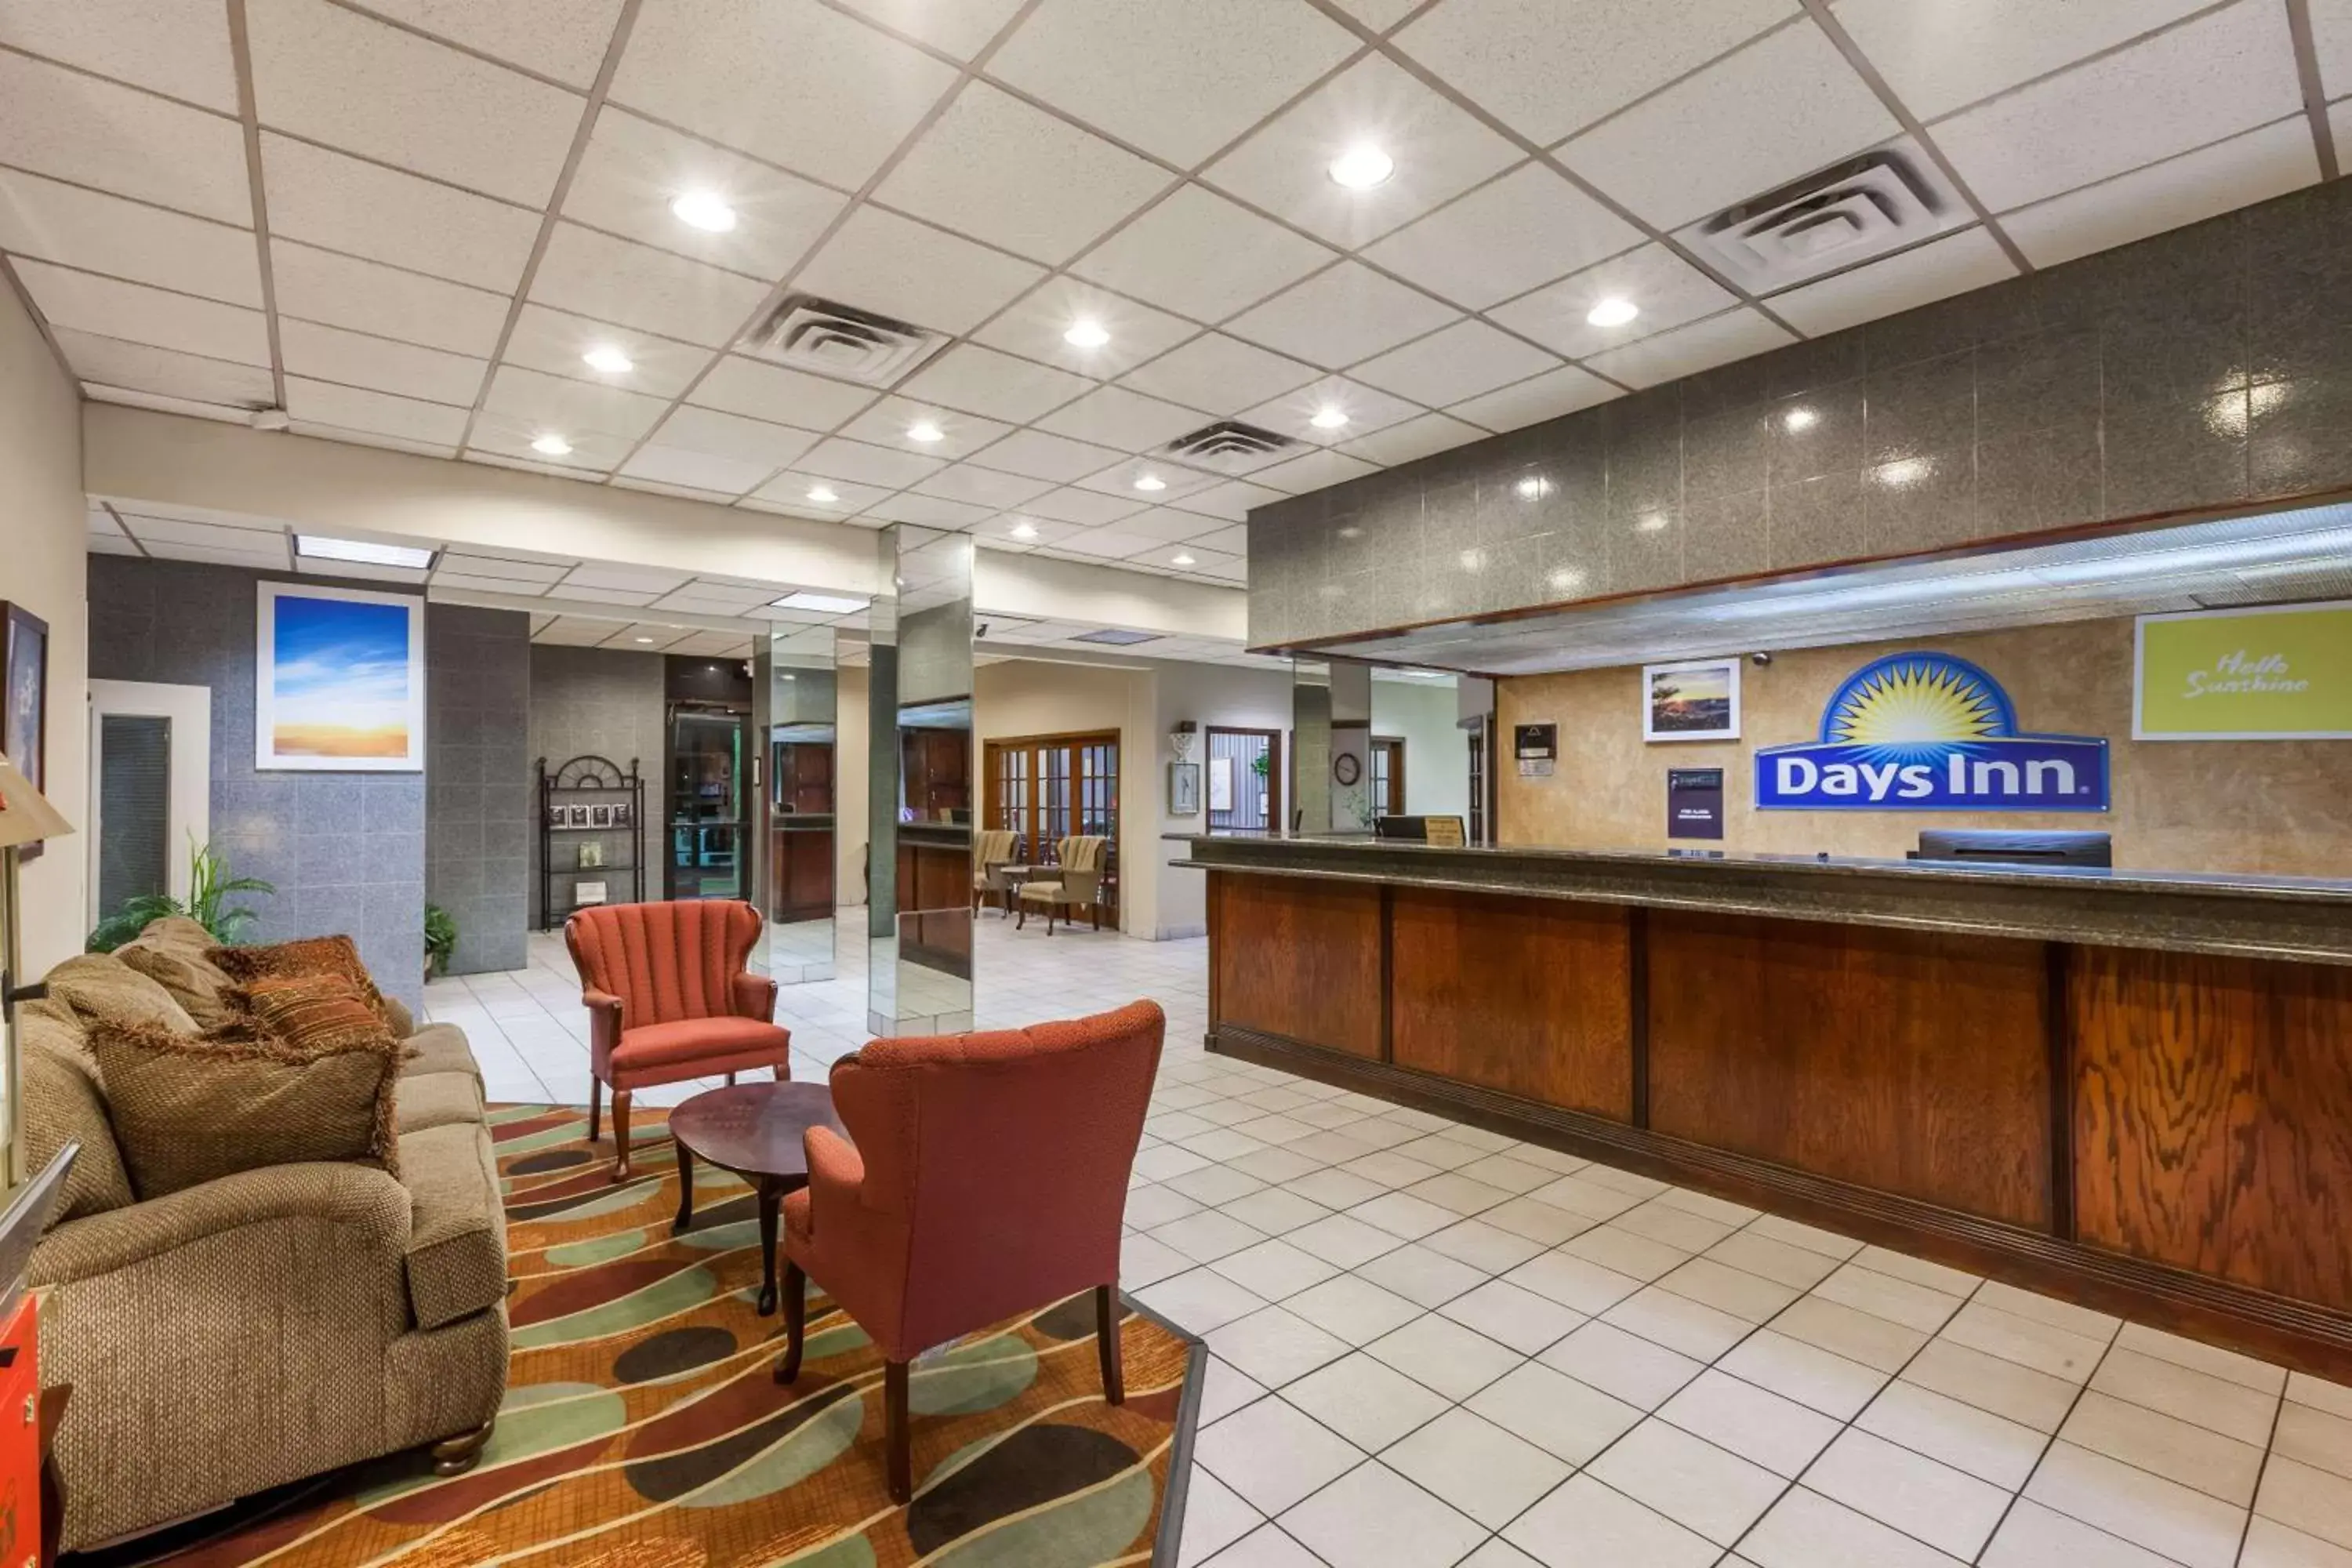 Lobby or reception, Lobby/Reception in Days Inn by Wyndham Amarillo East